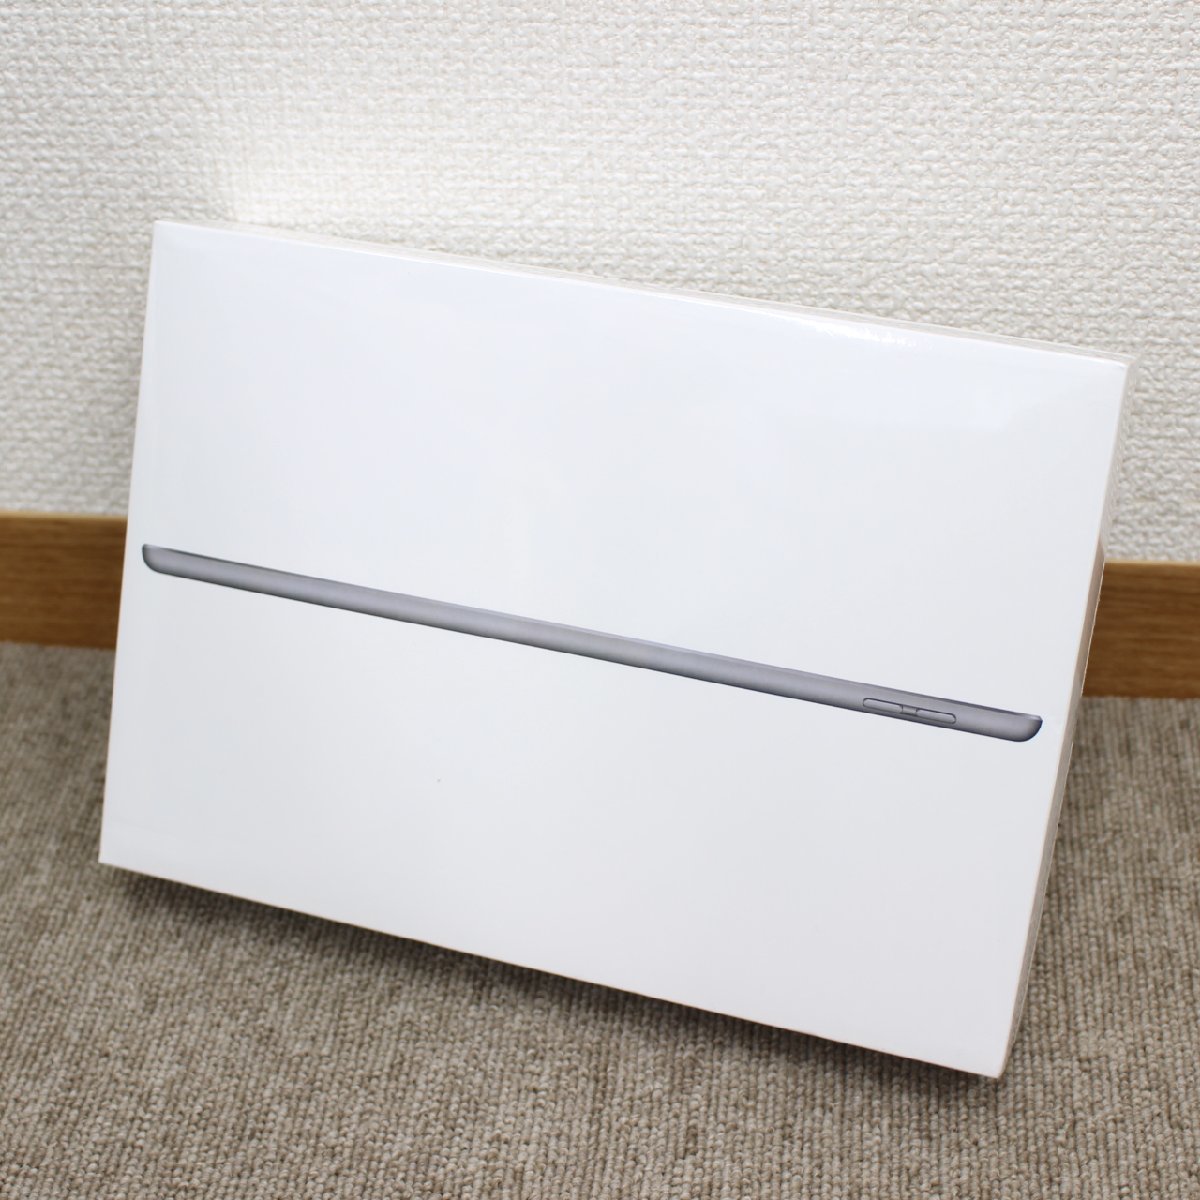 川崎市麻生区にて Apple iPad 第8世代 32GB Wi-Fi A2270 / MYL92J/A  を出張買取させて頂きました。